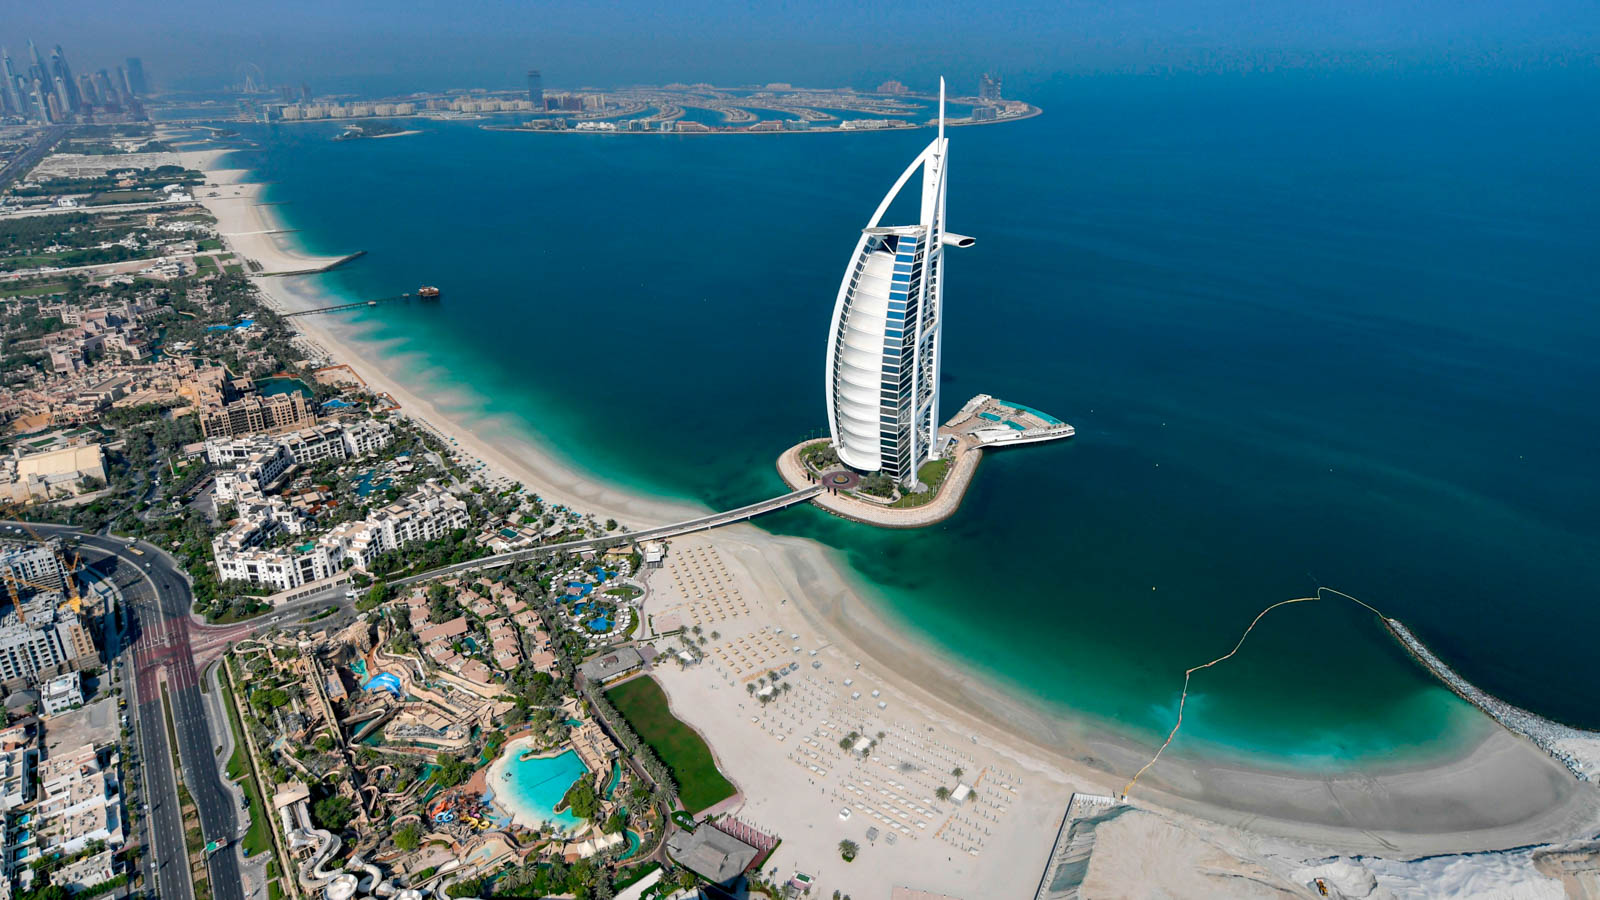 Dubai vươn lên trở thành thế lực công nghệ mới với làn sóng đầu tư từ Softbank, Sequoia Capital,...